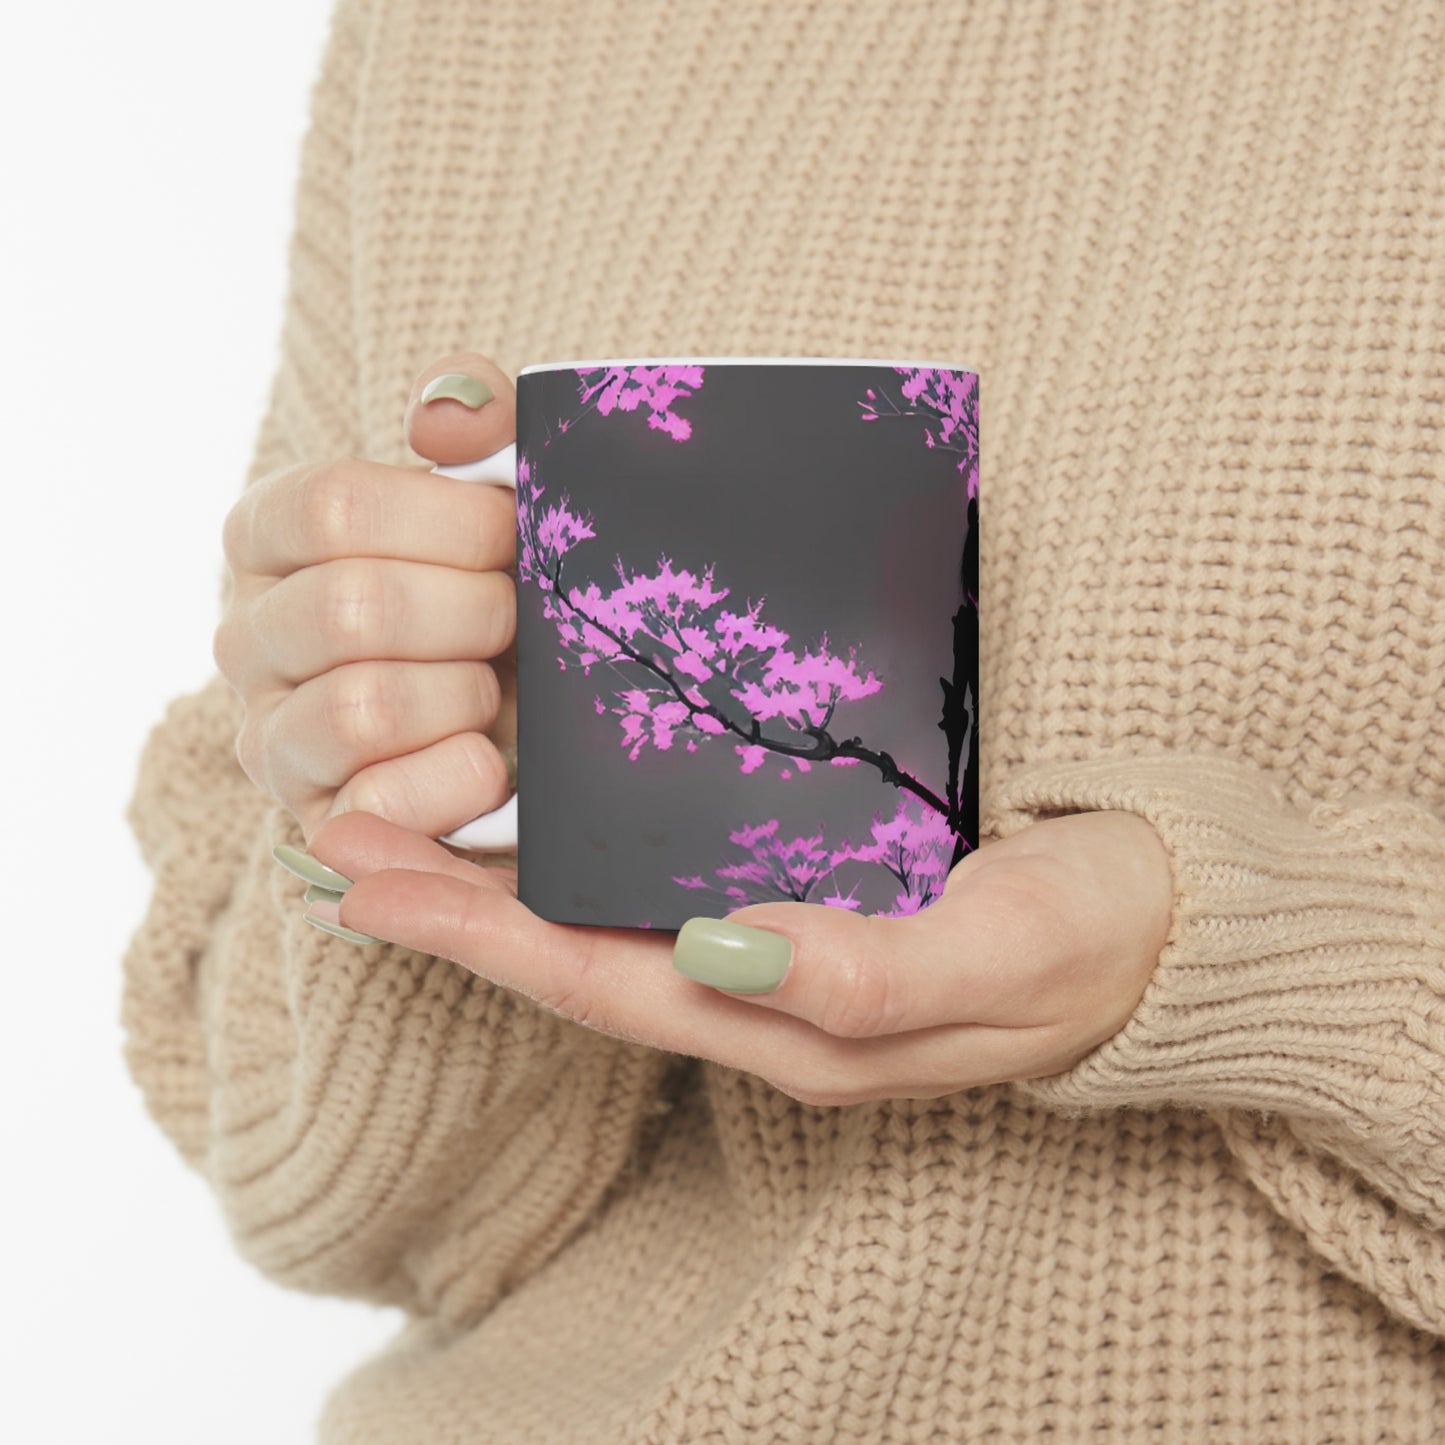 Cherry blossum 3 Ceramic Mug 11oz